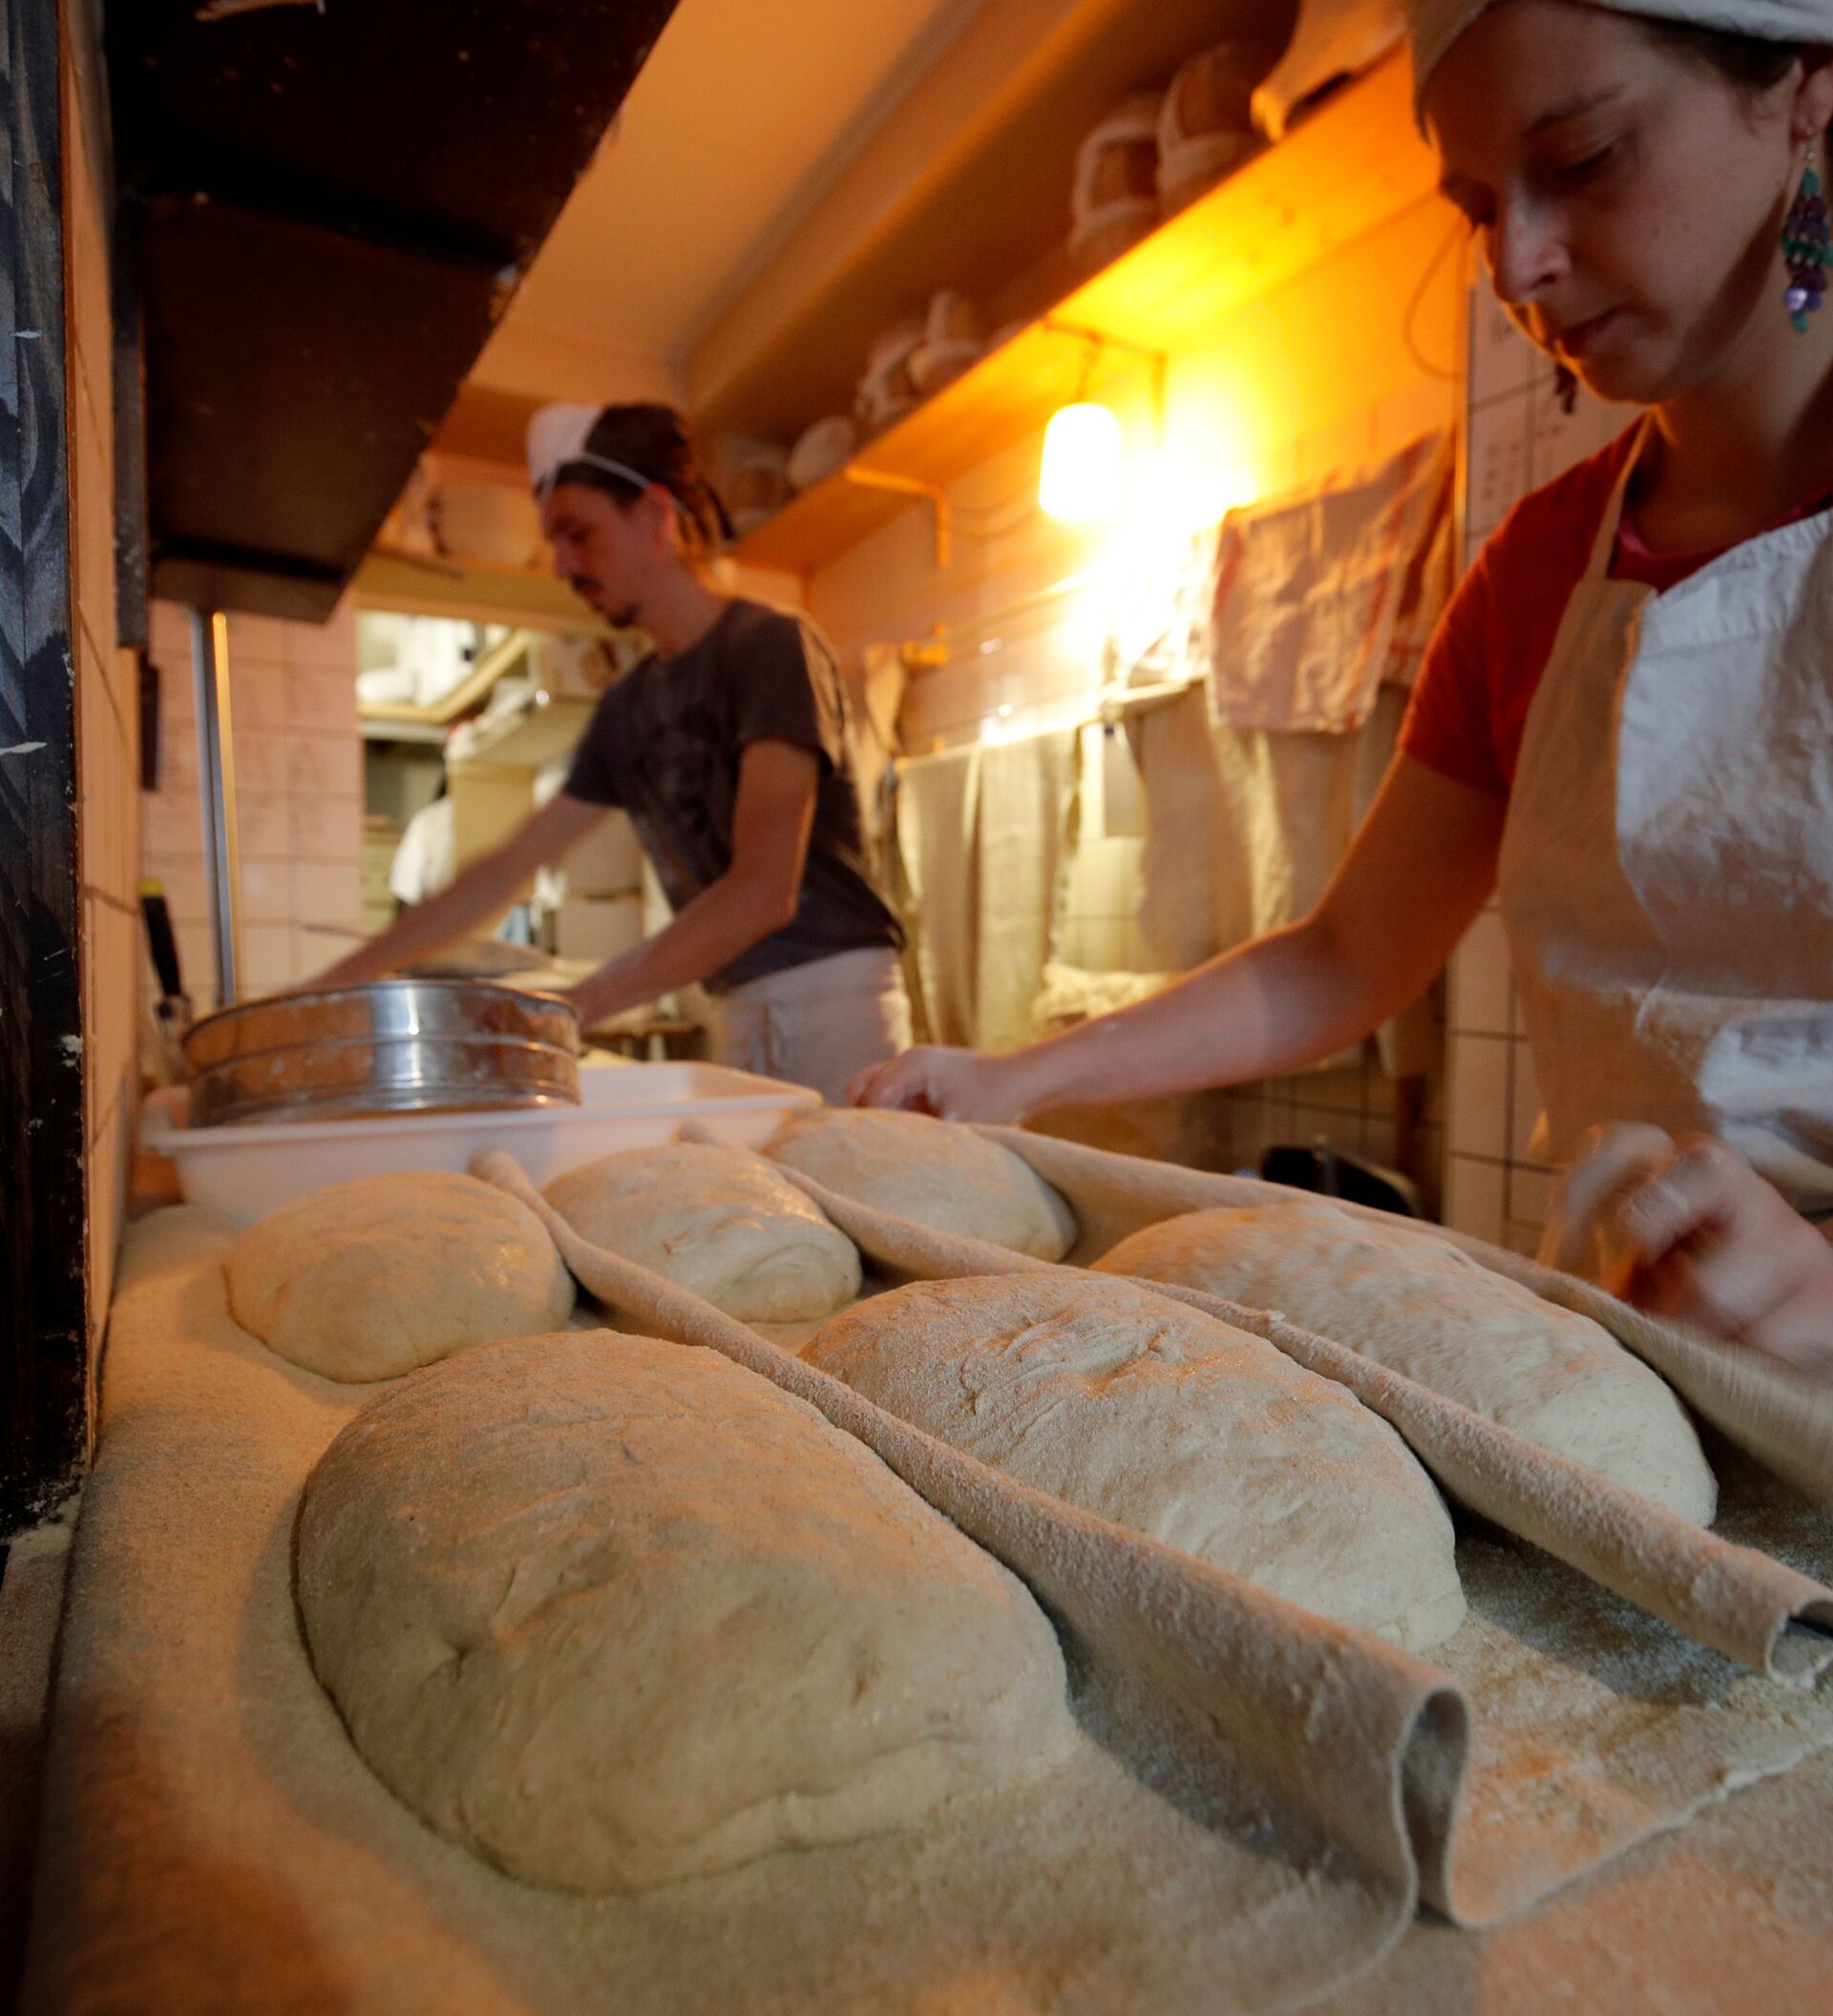 Видео печь хлеб. Хлеб в печи. Пекарня пекут хлеб. Пекарь печет хлеб. Молдавская печь для хлеба.